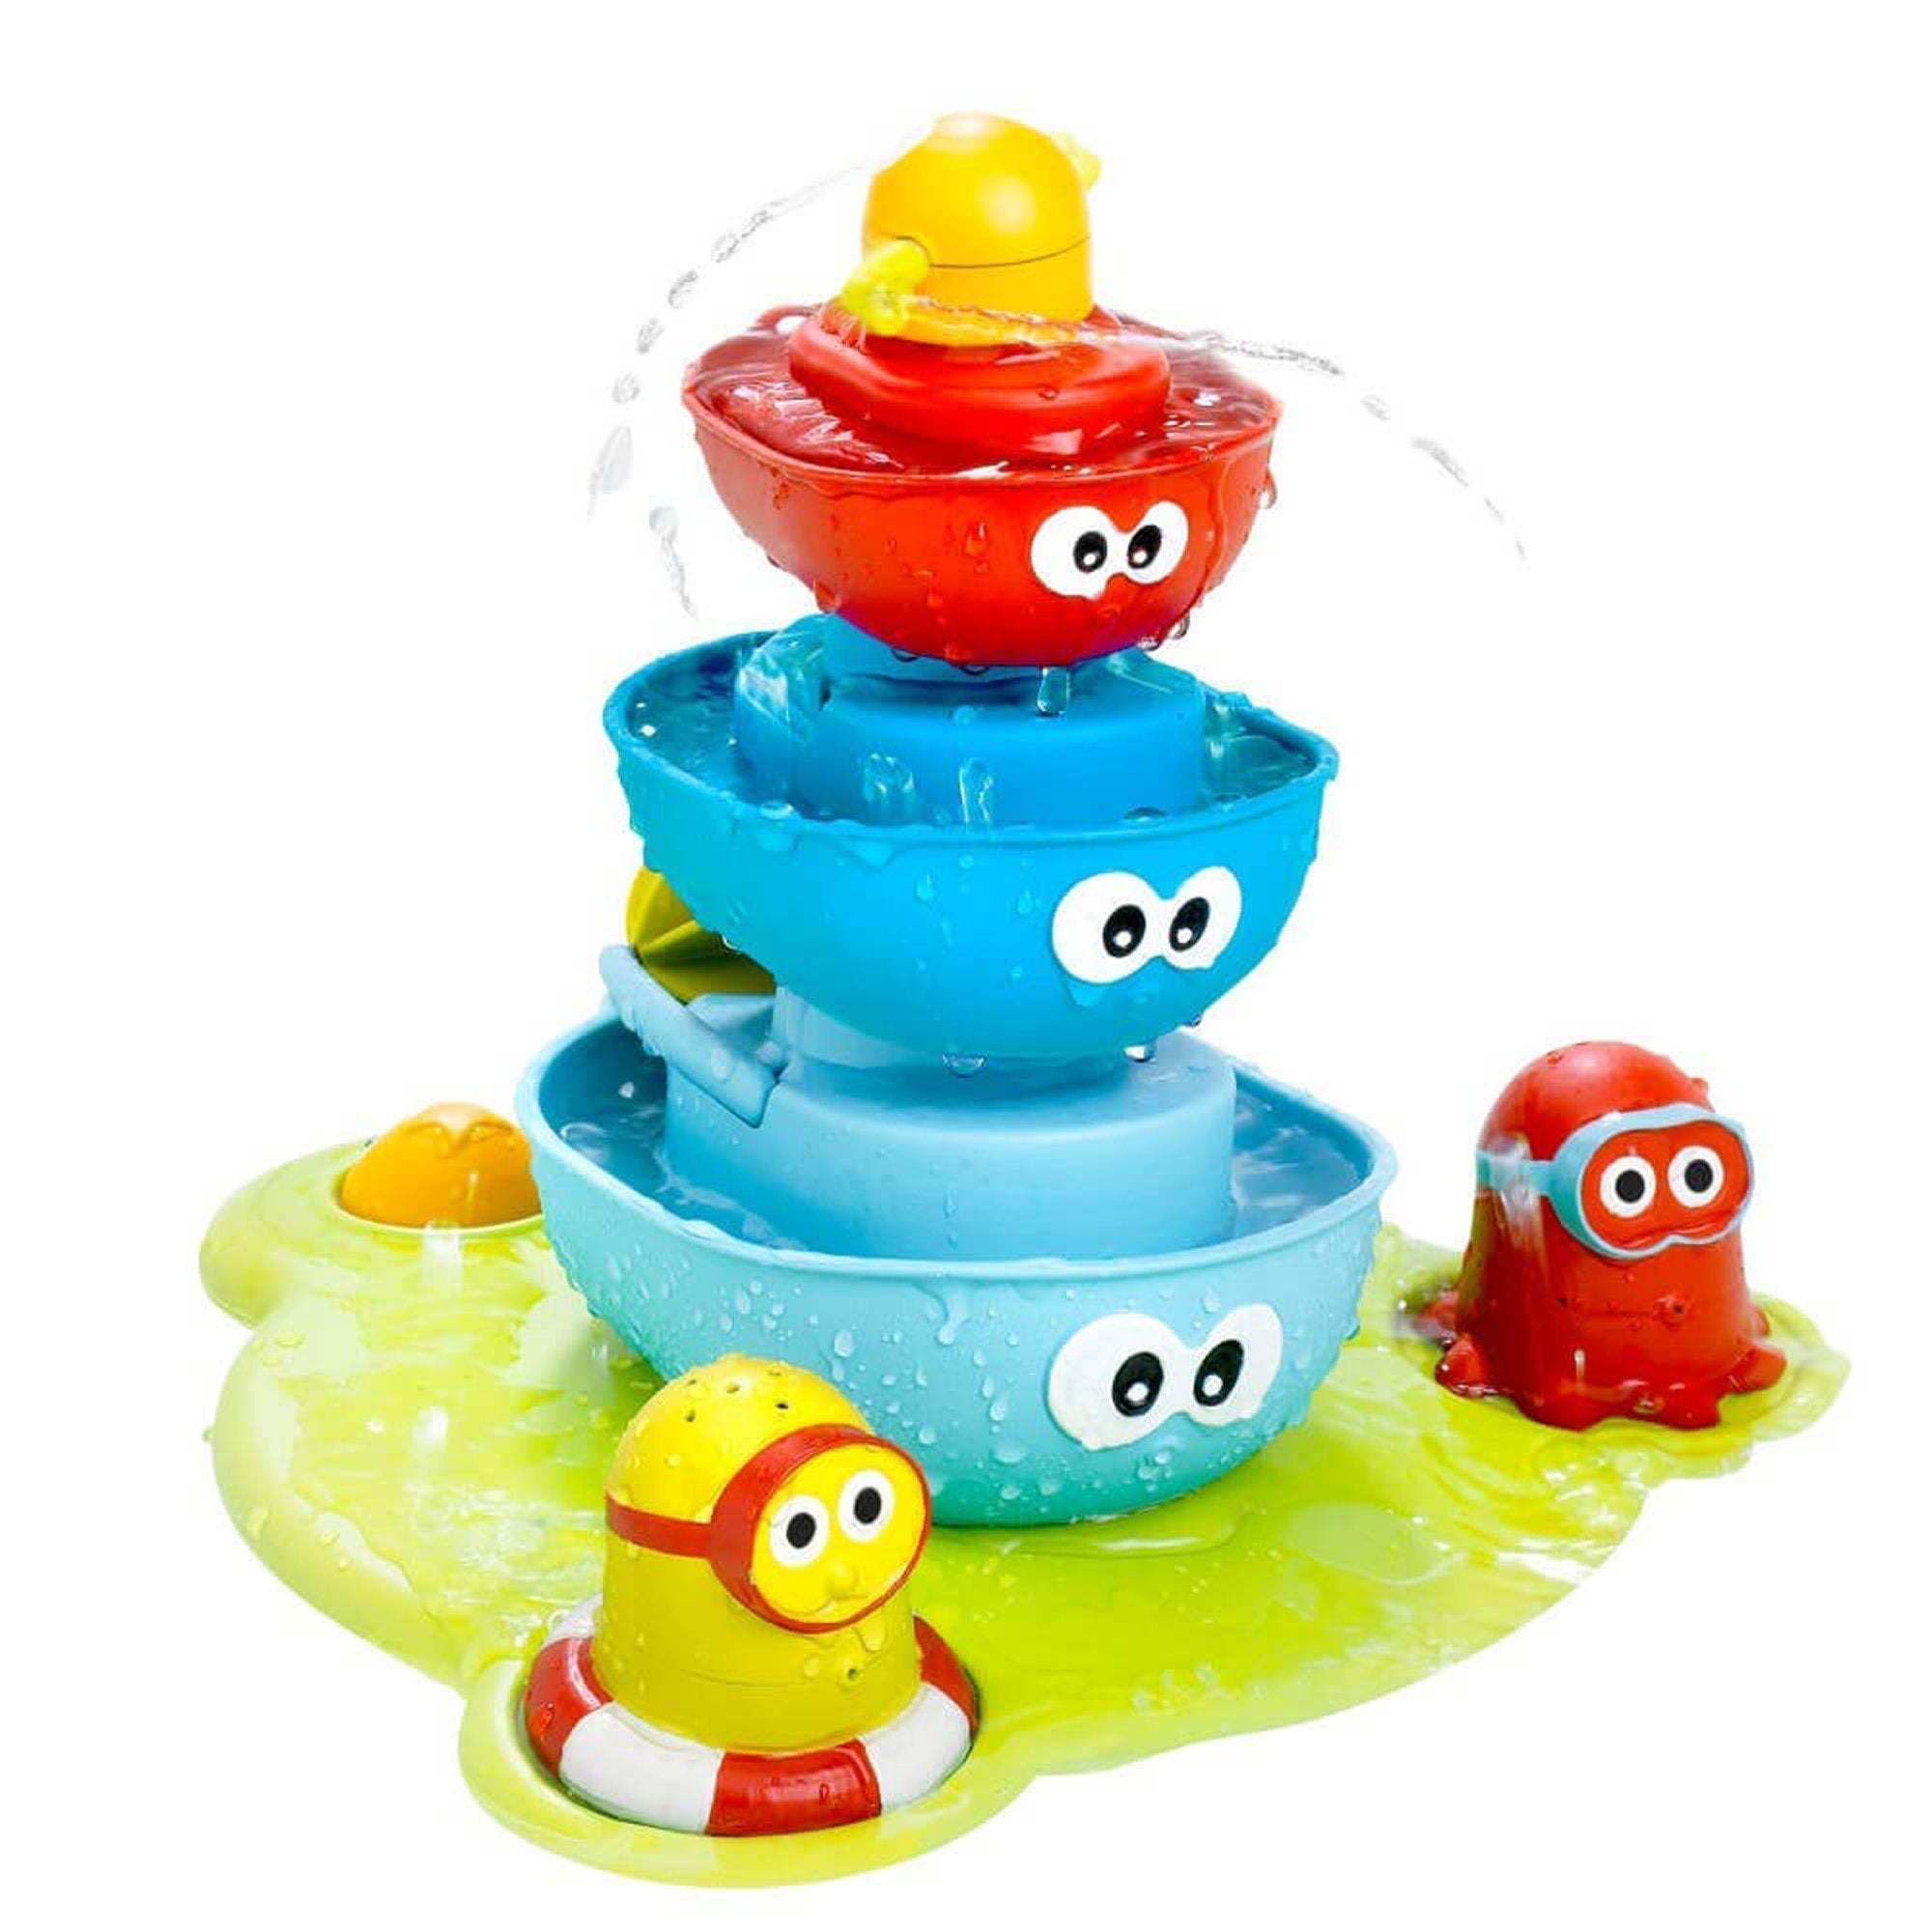 yookidoo bath toys australia